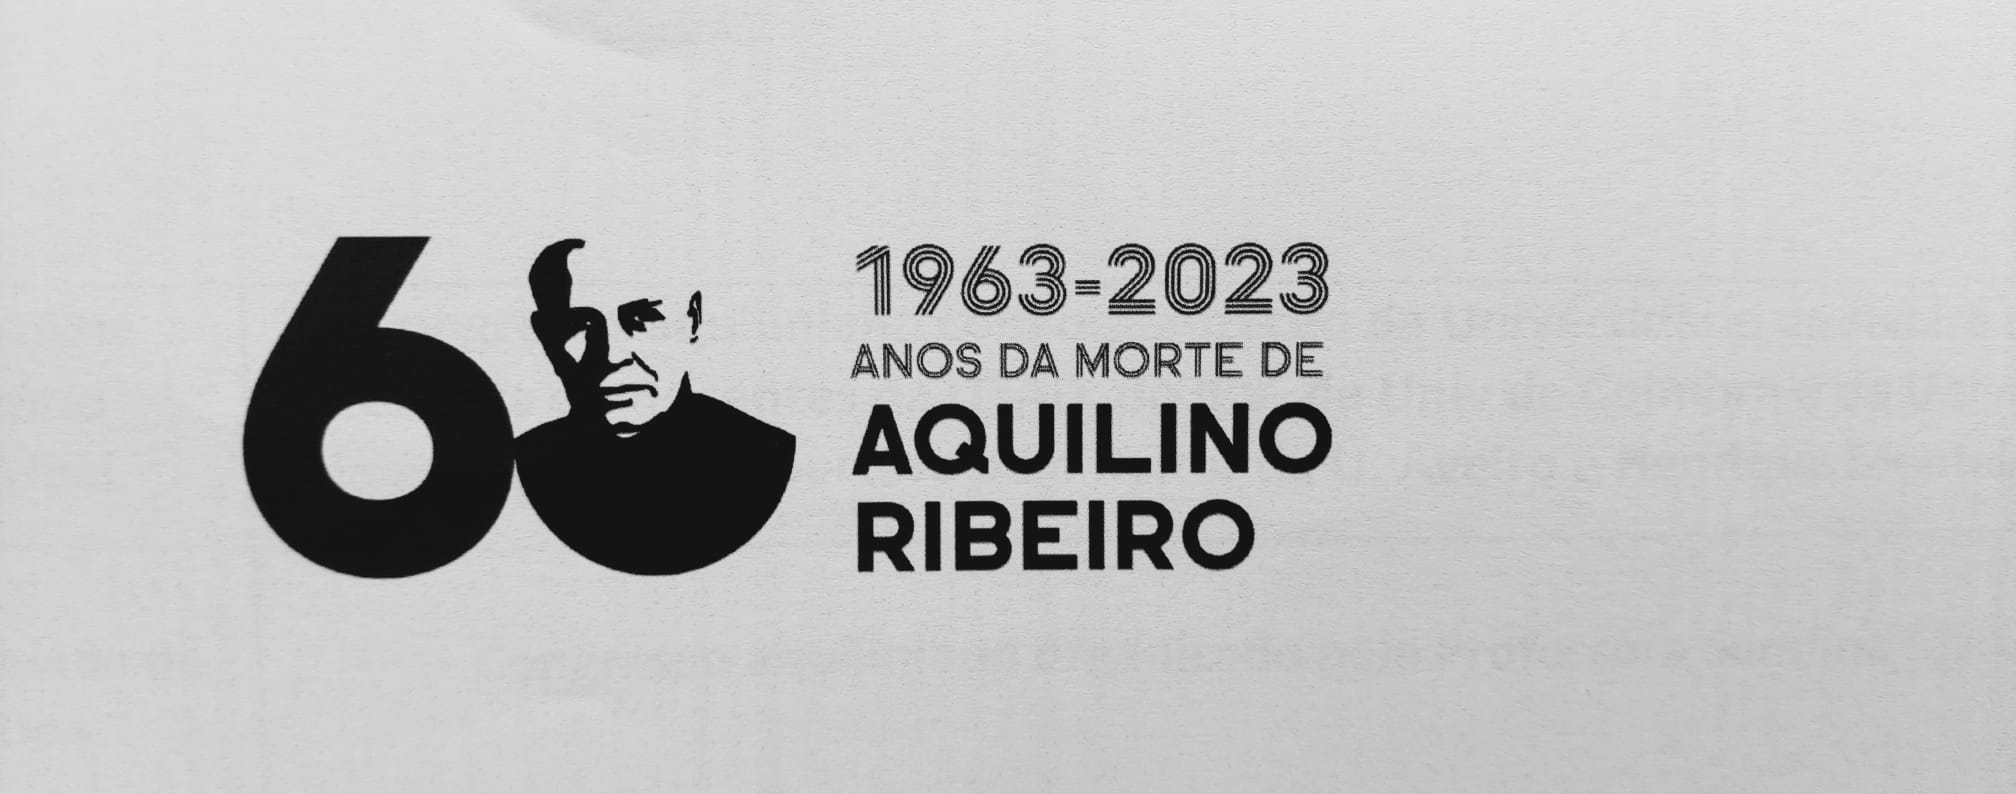 60 Anos da Morte de Aquilino Ribeiro (1963-2023)